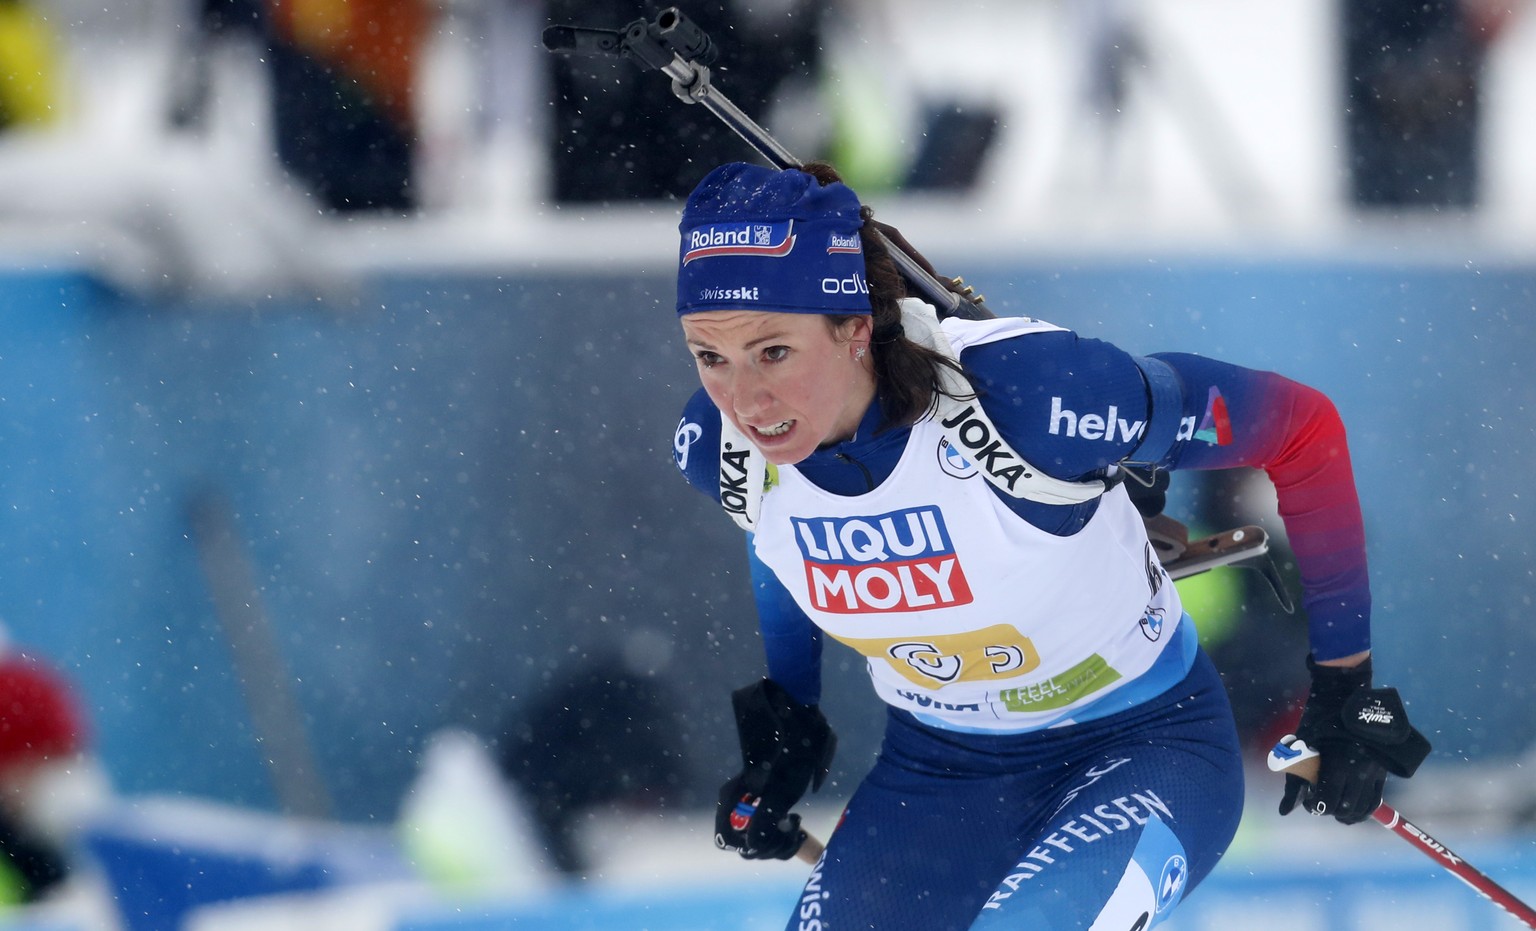 Biathlon-Olympiamedaillengewinnerin Selina Gasparin zählt auch als Mutter noch zur erweiterten Weltspitze.